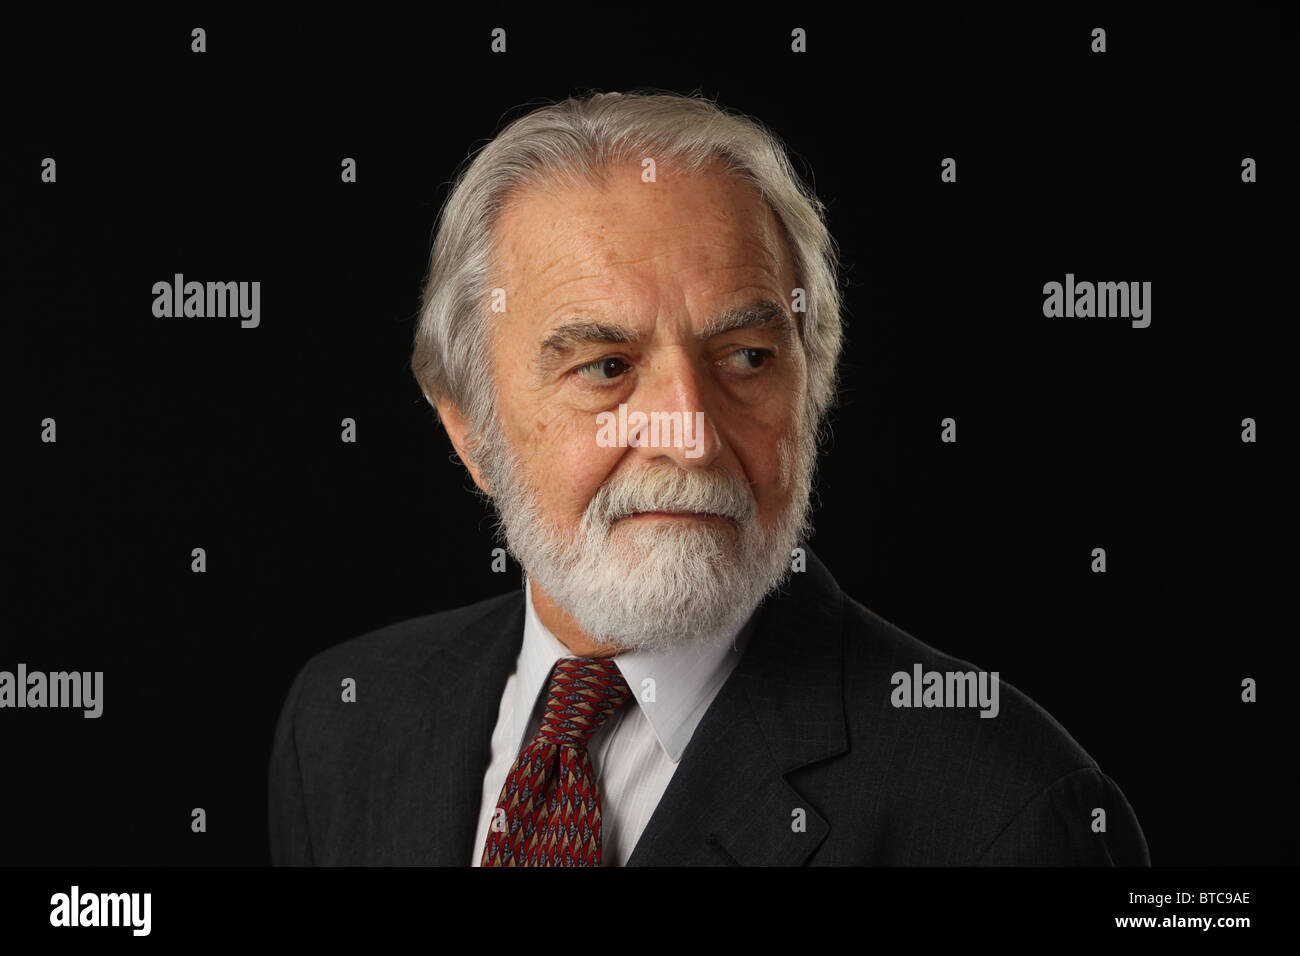 Ritratto di barba e capelli grigi imprenditore senior in tuta e cravatta, studio shot sfondo nero, 16 Ottobre 2010 Foto Stock